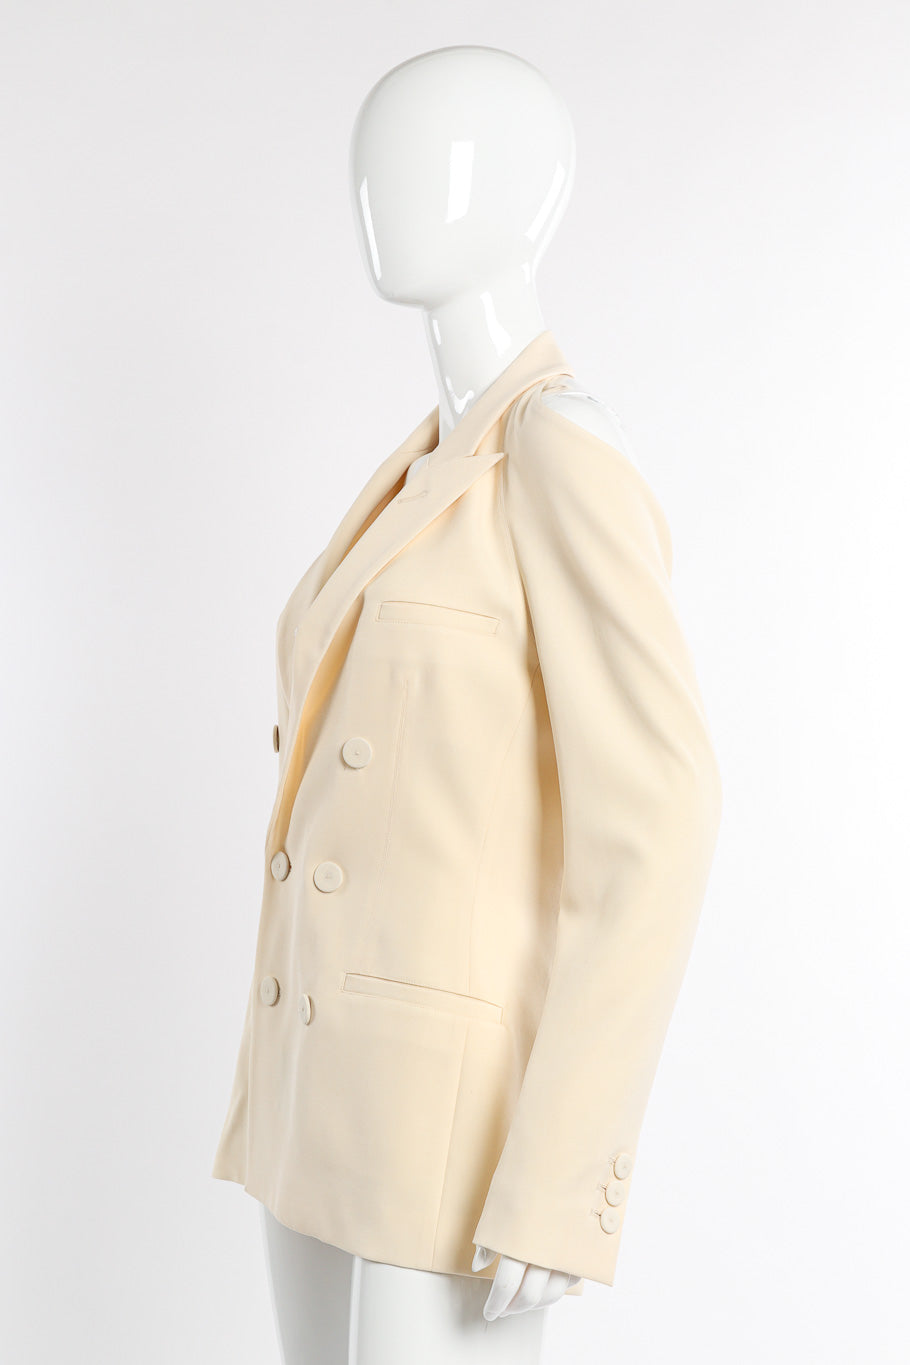 Jean Paul Gaultier Open Back Blazer side on mannequin @recessla